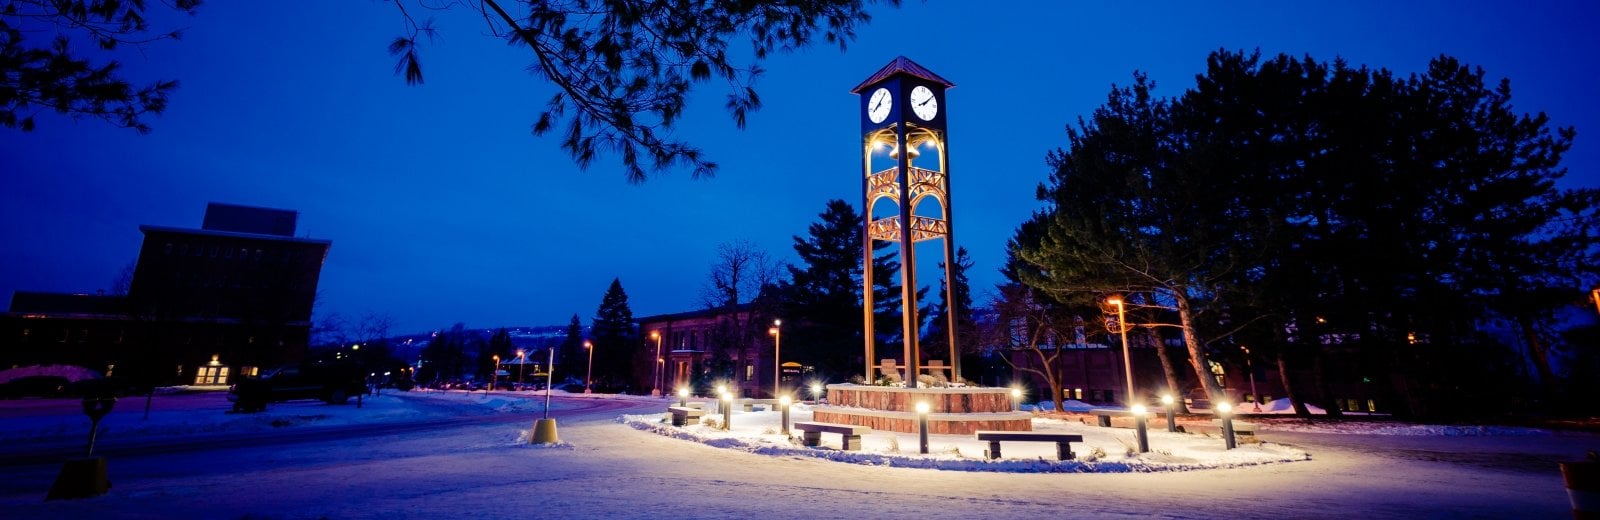 Michigan Tech's clock tower.